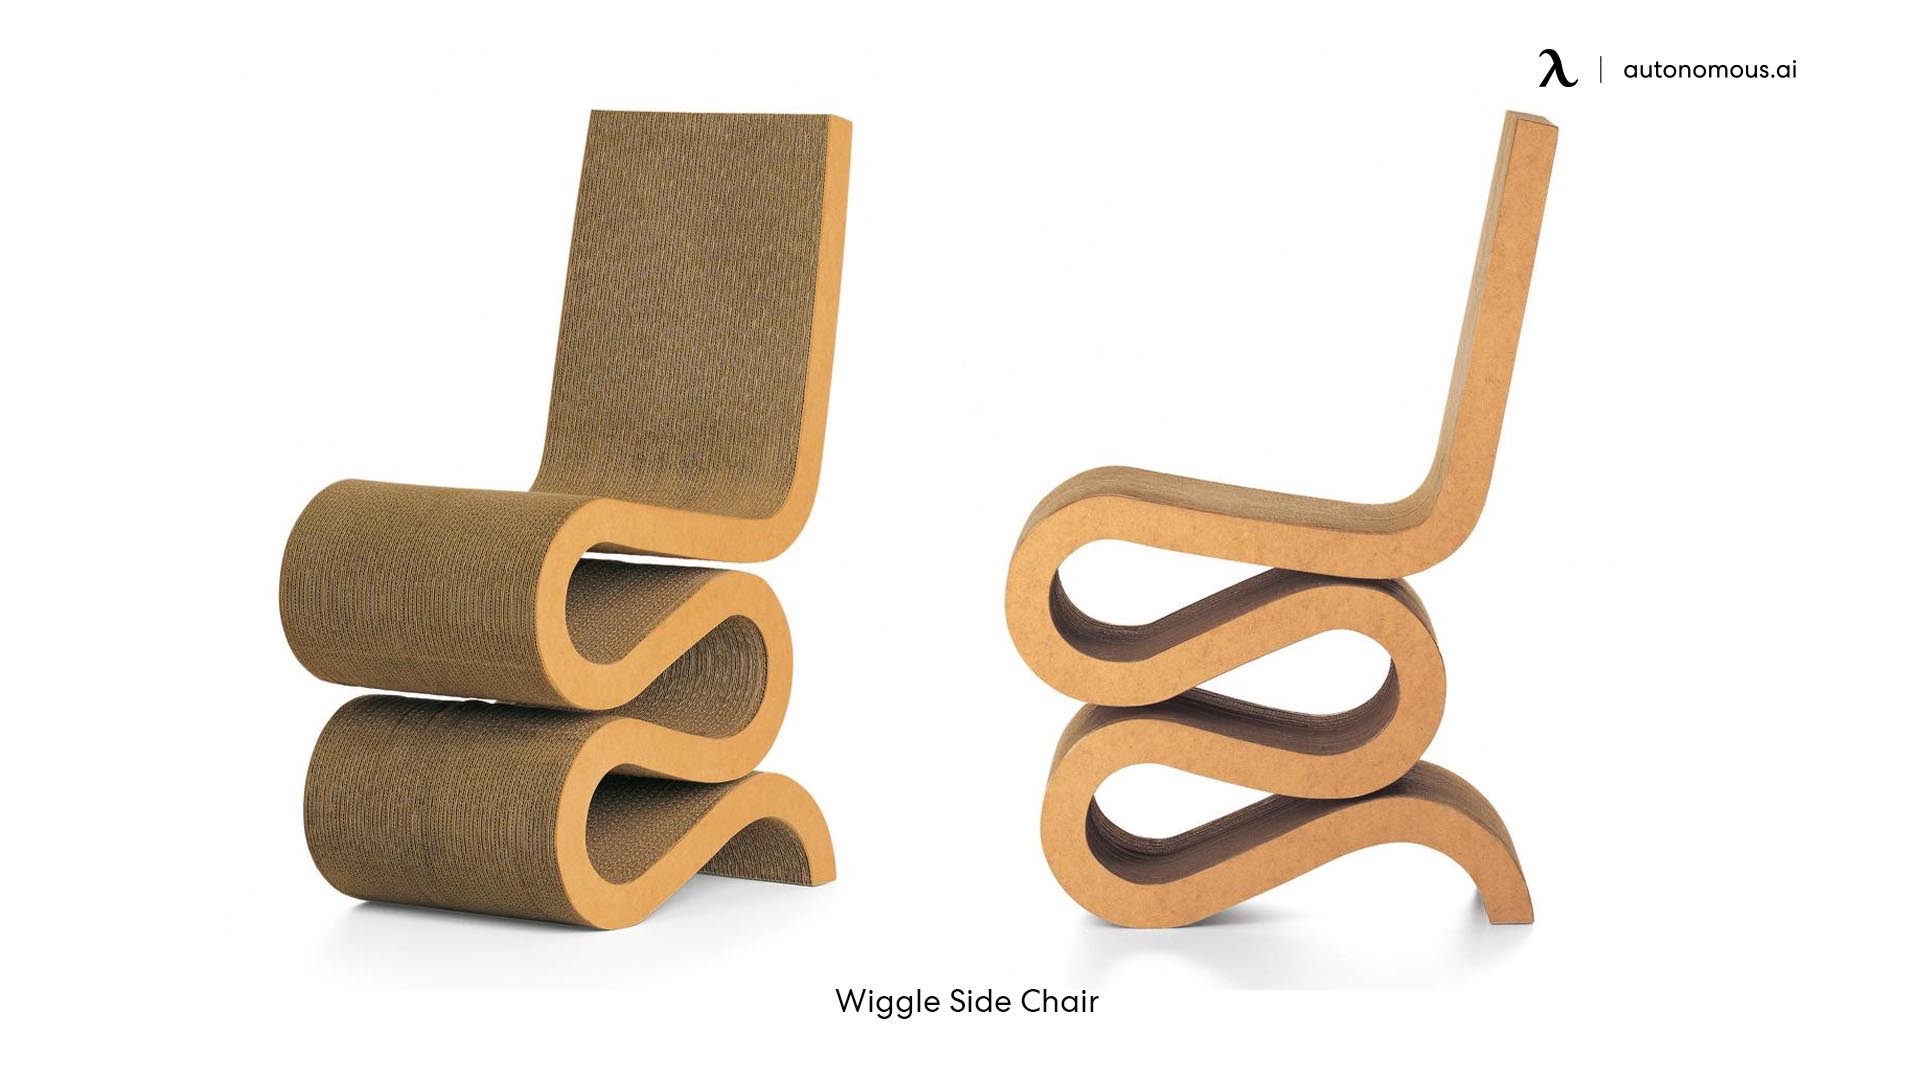 Wiggle Side Chair